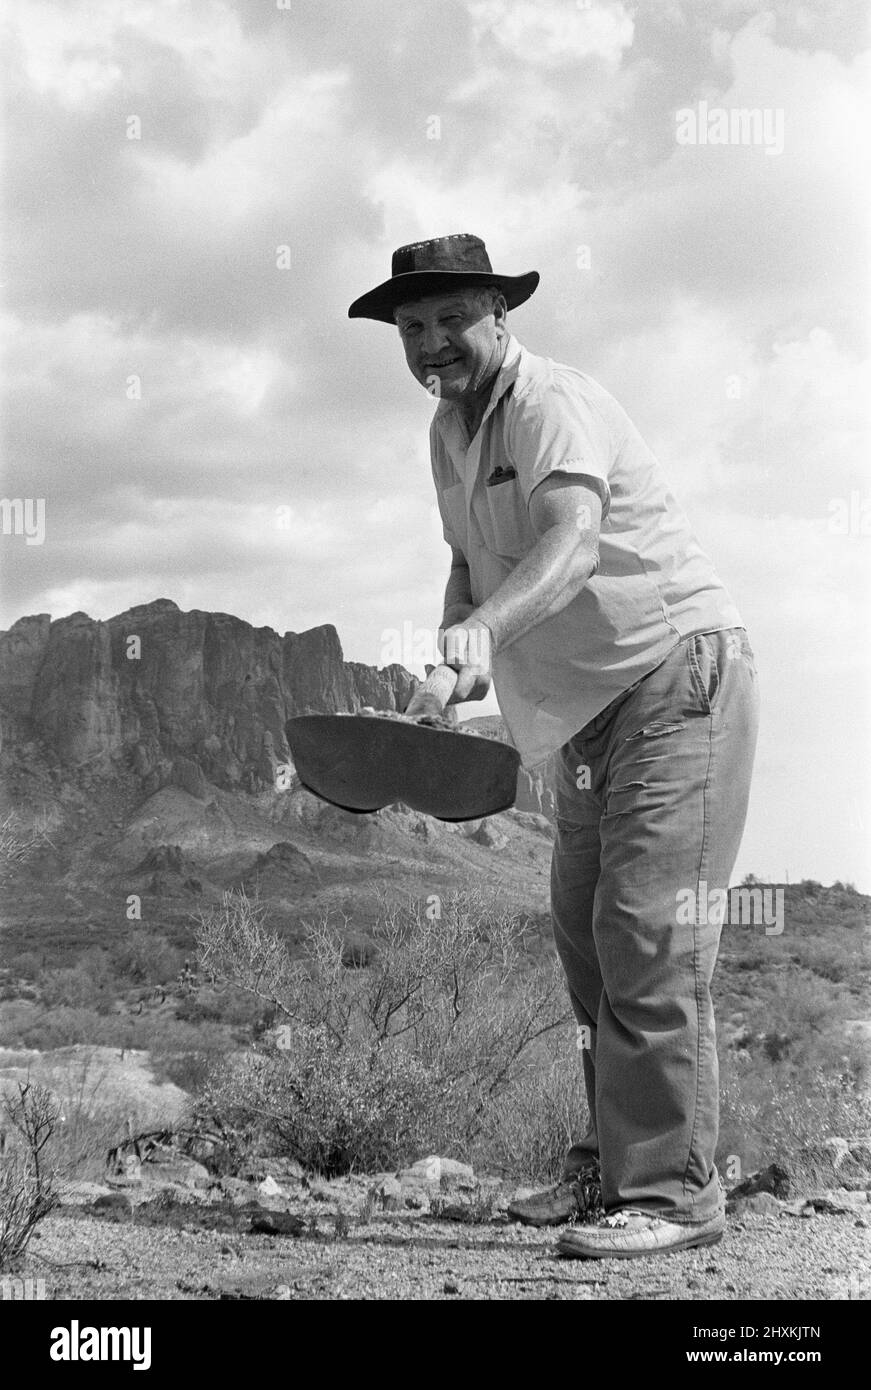 DOC Rosecrans ist ein Goldsucher auf Superstition Mountain, Apache Junction, Arizona. Wo er nach Gold gräbt und nach der legendären Mine des verlorenen Holländers sucht. DOC ist nur einer von einem endlosen Strom von Schatzjägern auf der Suche nach der verlorenen Mine die Legende wuchs, nachdem der Niederländer Jake Walz vor über 100 Jahren aus dem Berg auftauchte, als ein Sack Golderz behauptete, eine Mine mit einer Goldnaht gefunden zu haben 18 Zoll dick. 8.. August 1976 Stockfoto